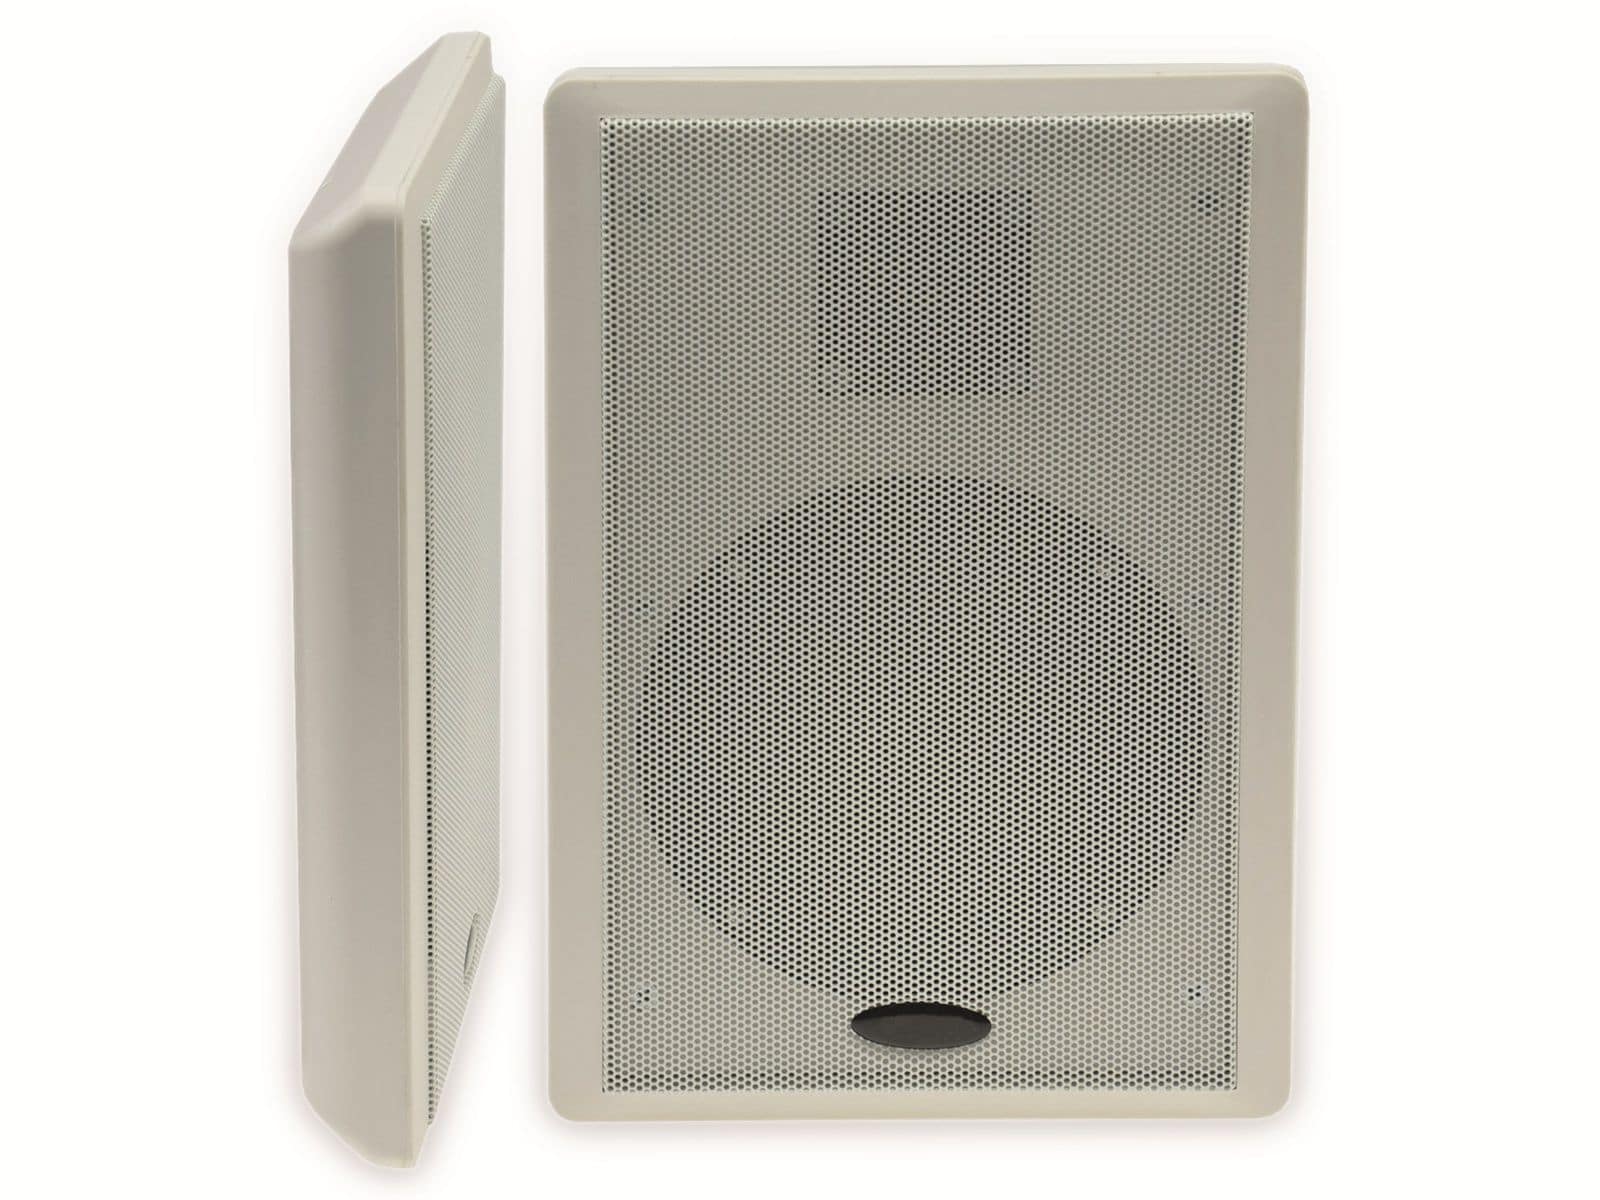 CHILITEC Flach-Lautsprecher 17804, 40 W, weiß, 2 Stück von ChiliTec